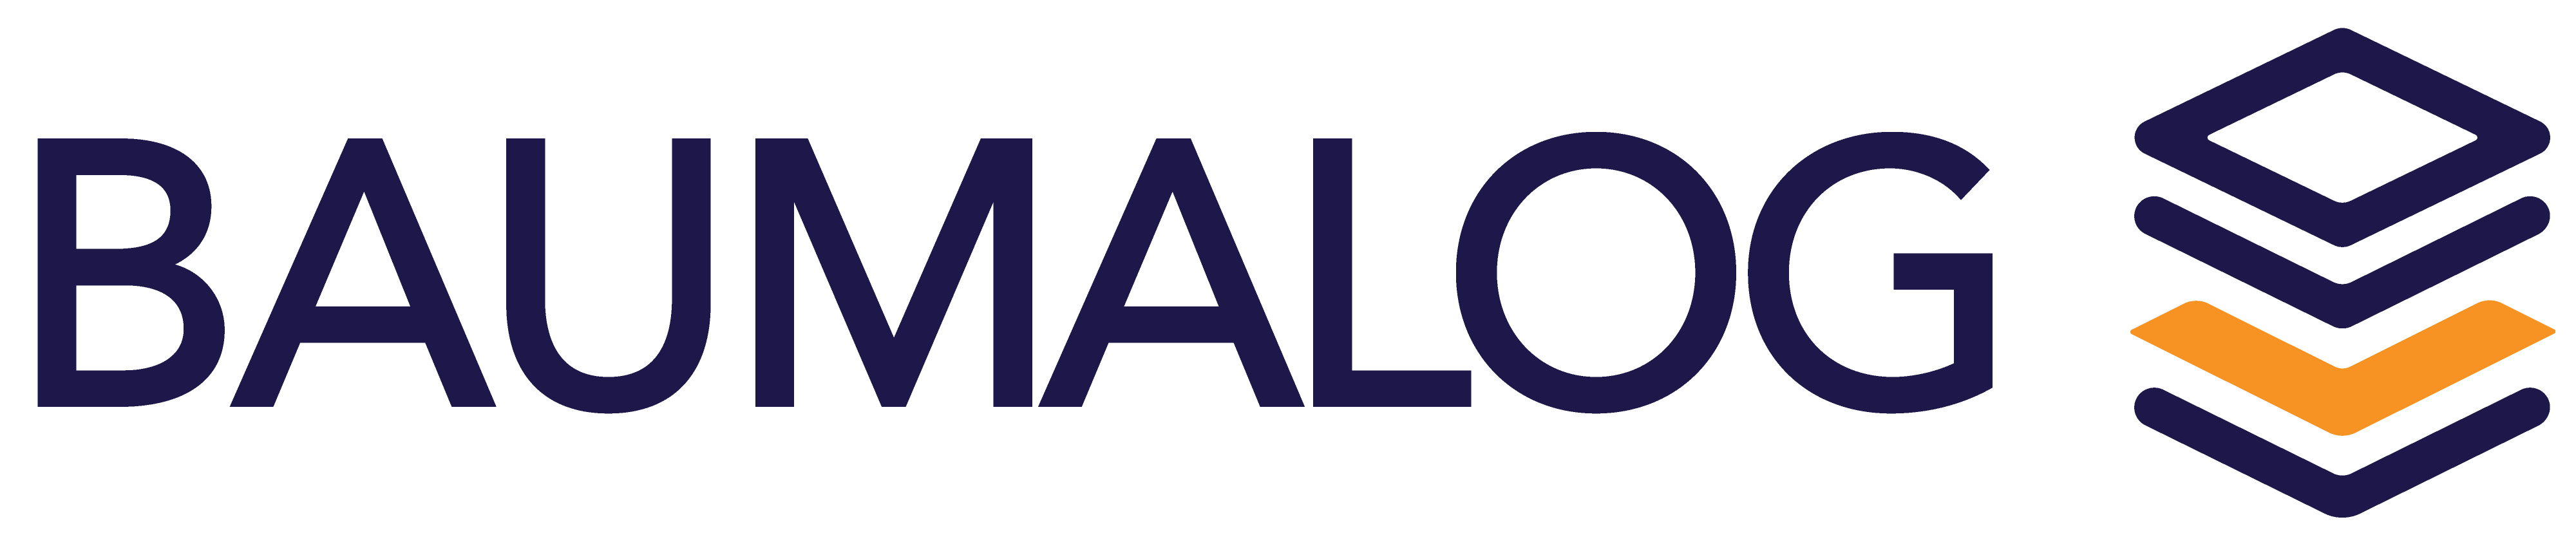 Baumalog logo